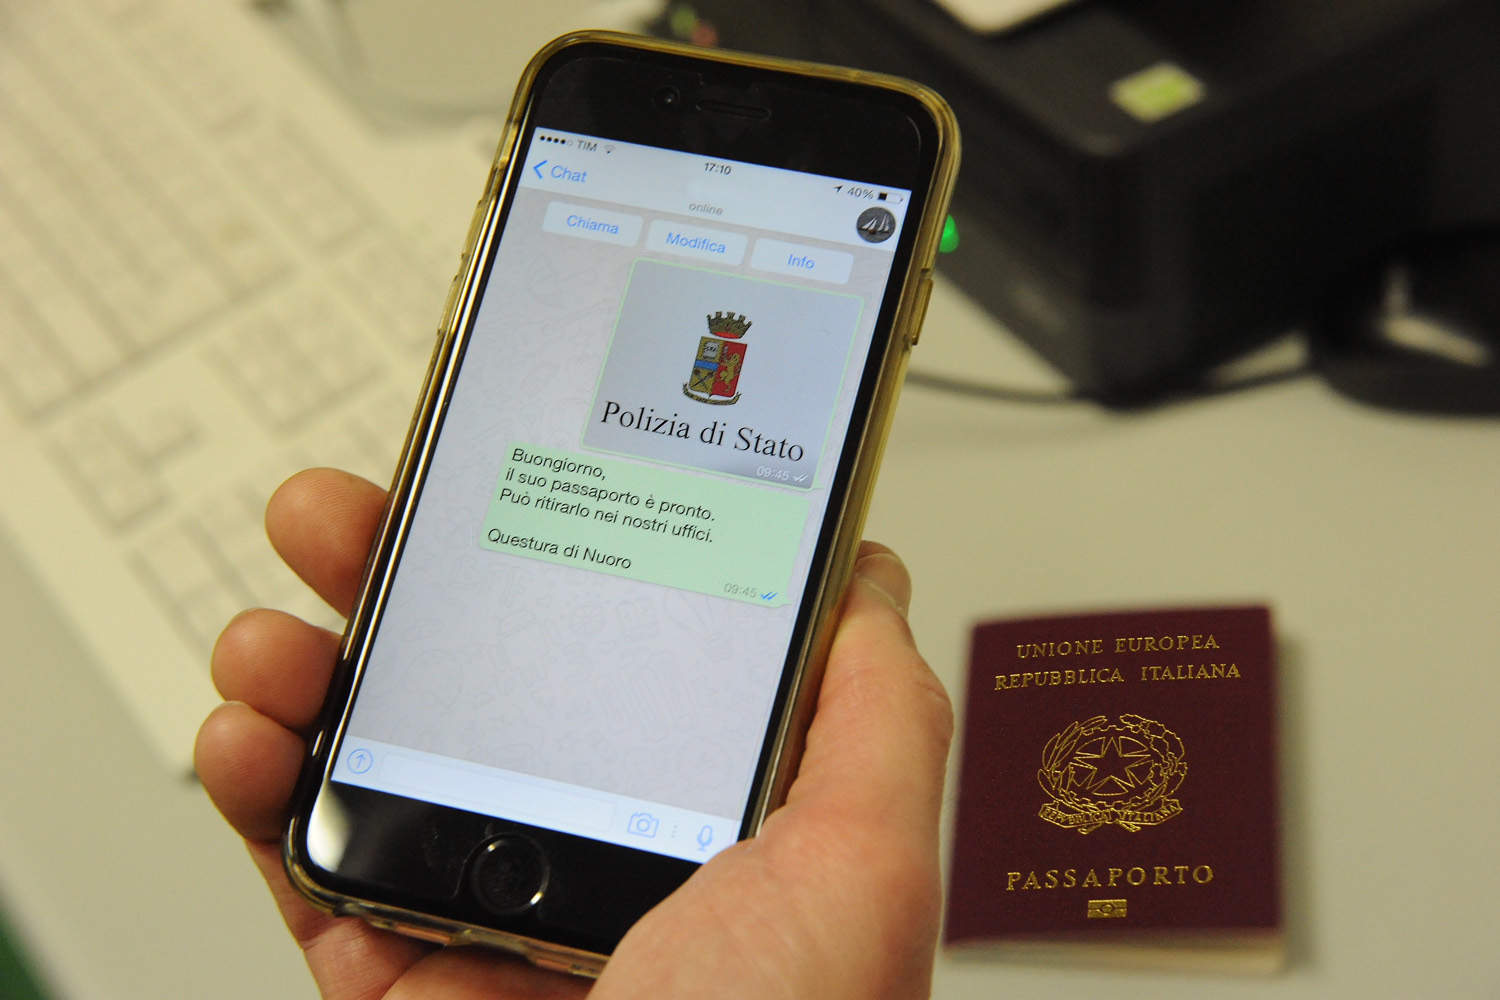 Questura di Nuoro: un sms per avvisare che il passaporto è pronto